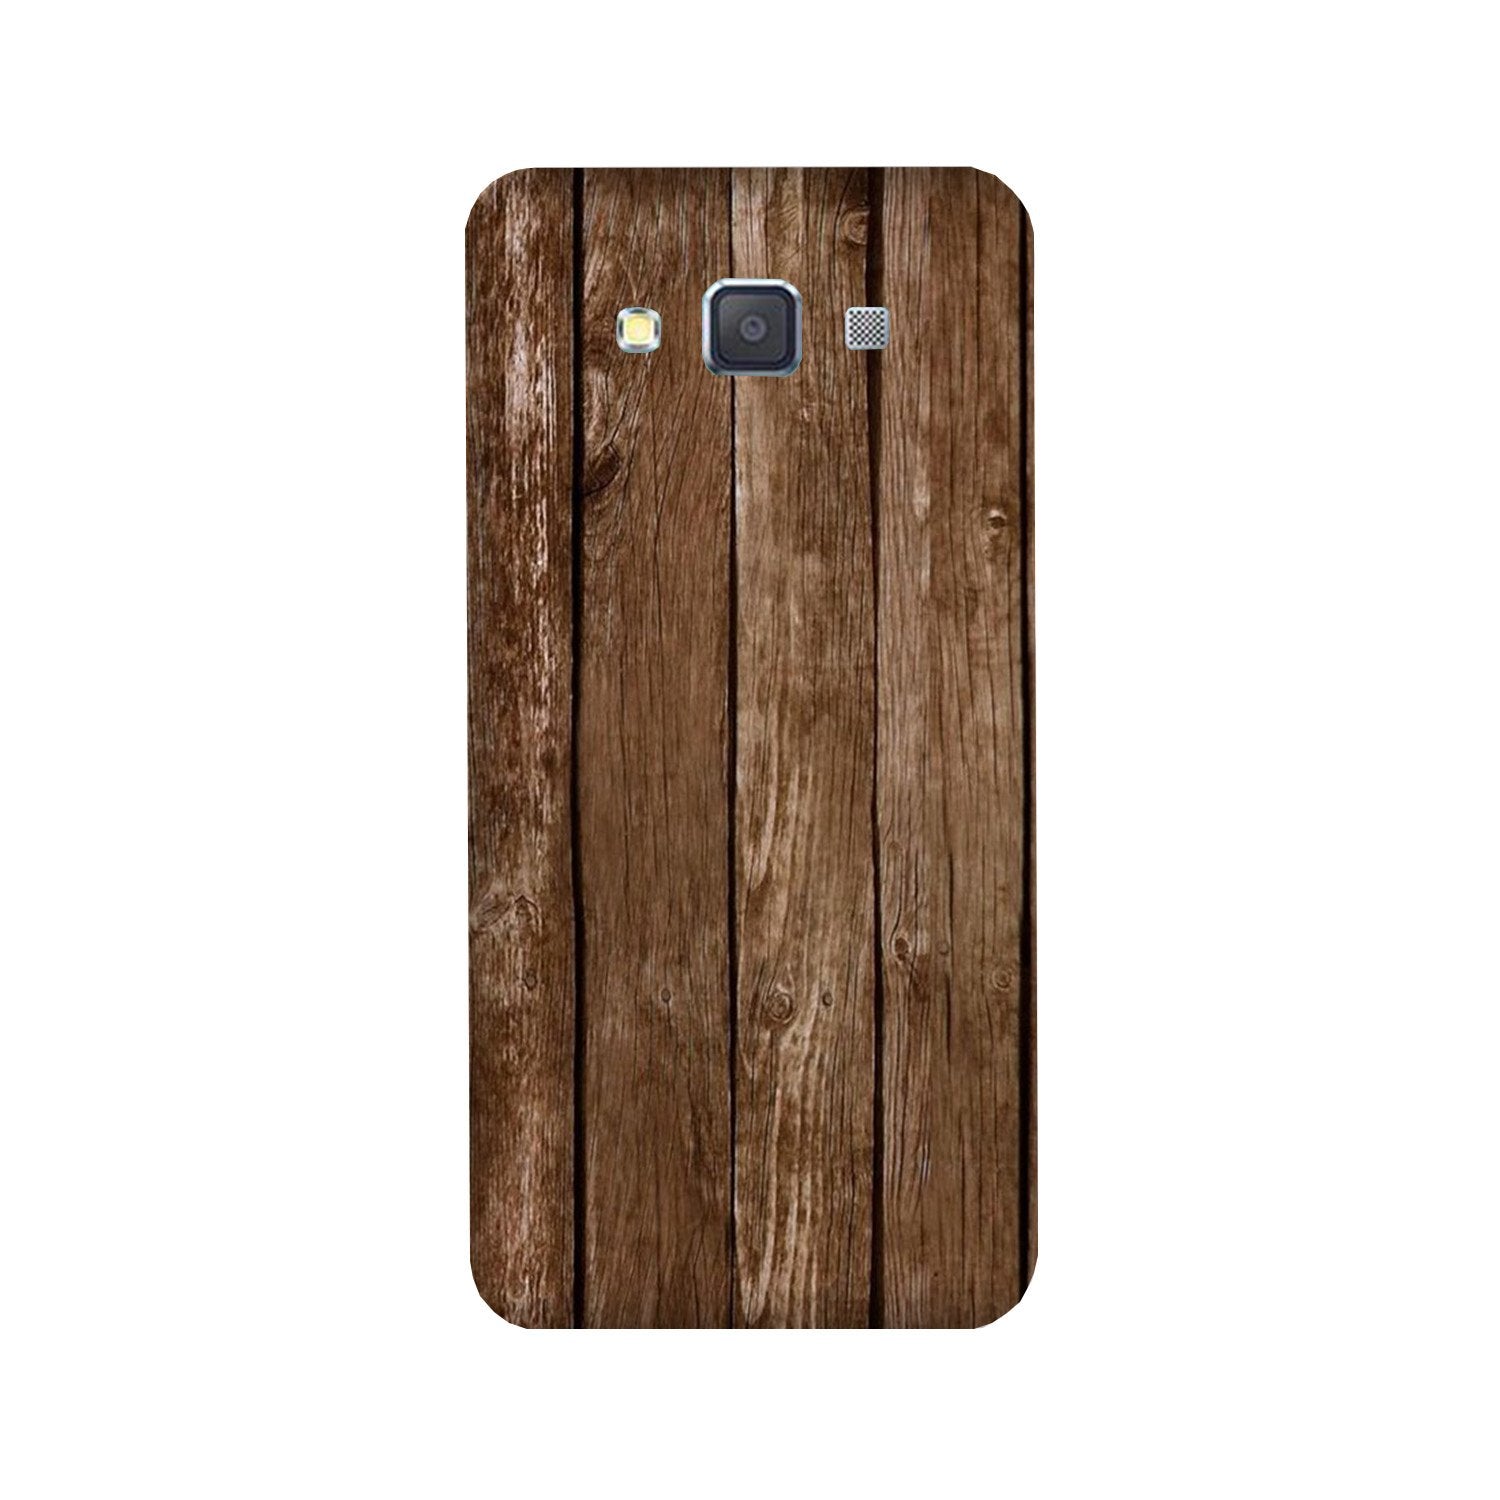 Wooden Look Case for Galaxy E7  (Design - 112)